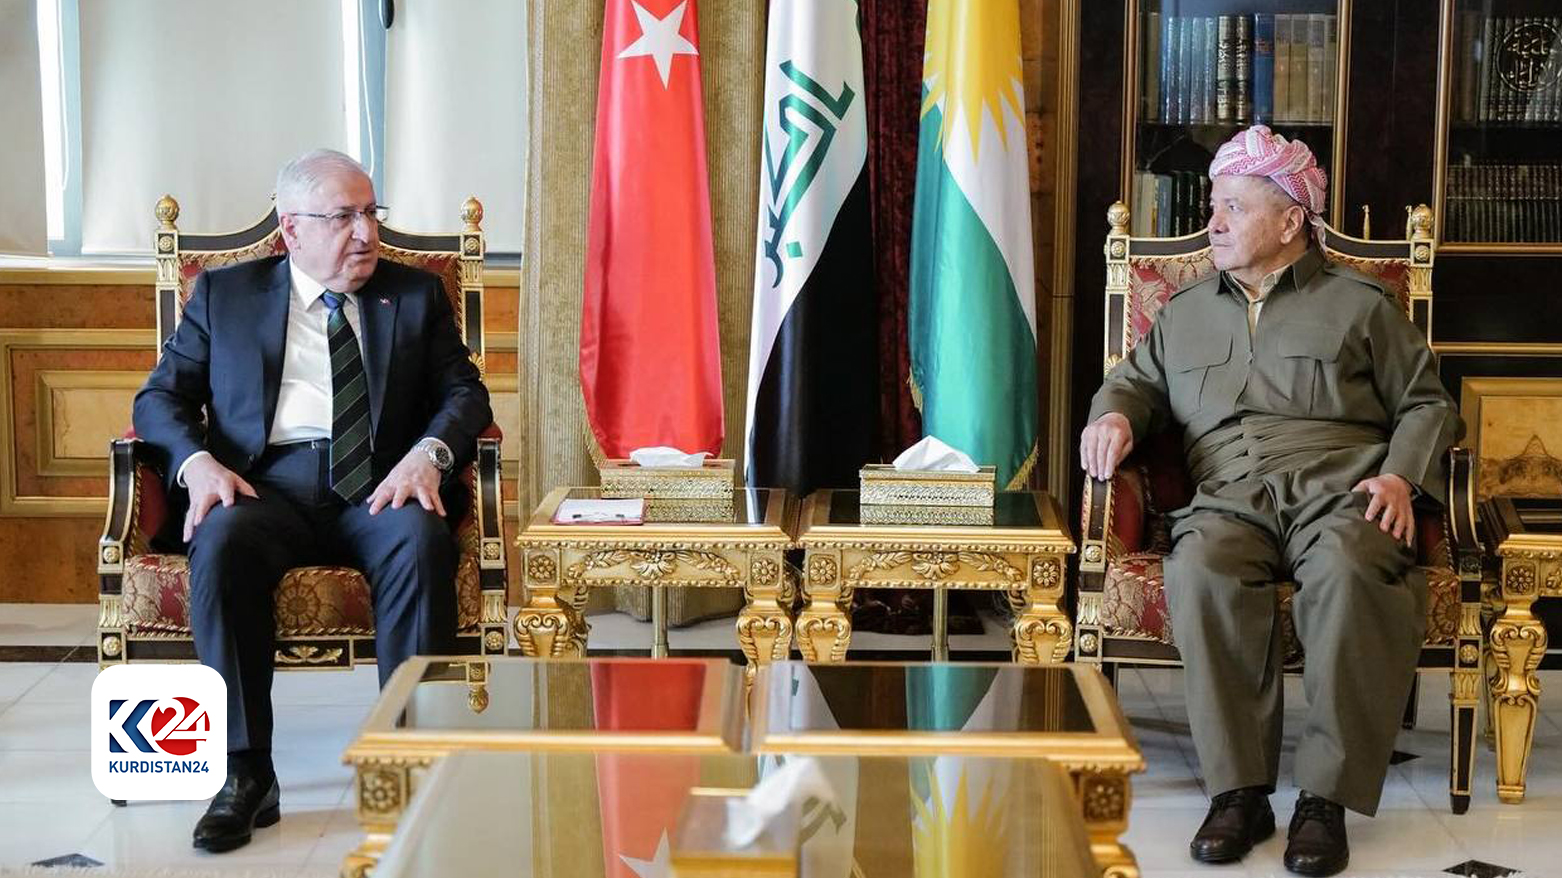 الرئيس مسعود بارزاني ووزير الدفاع التركي يشار غولر